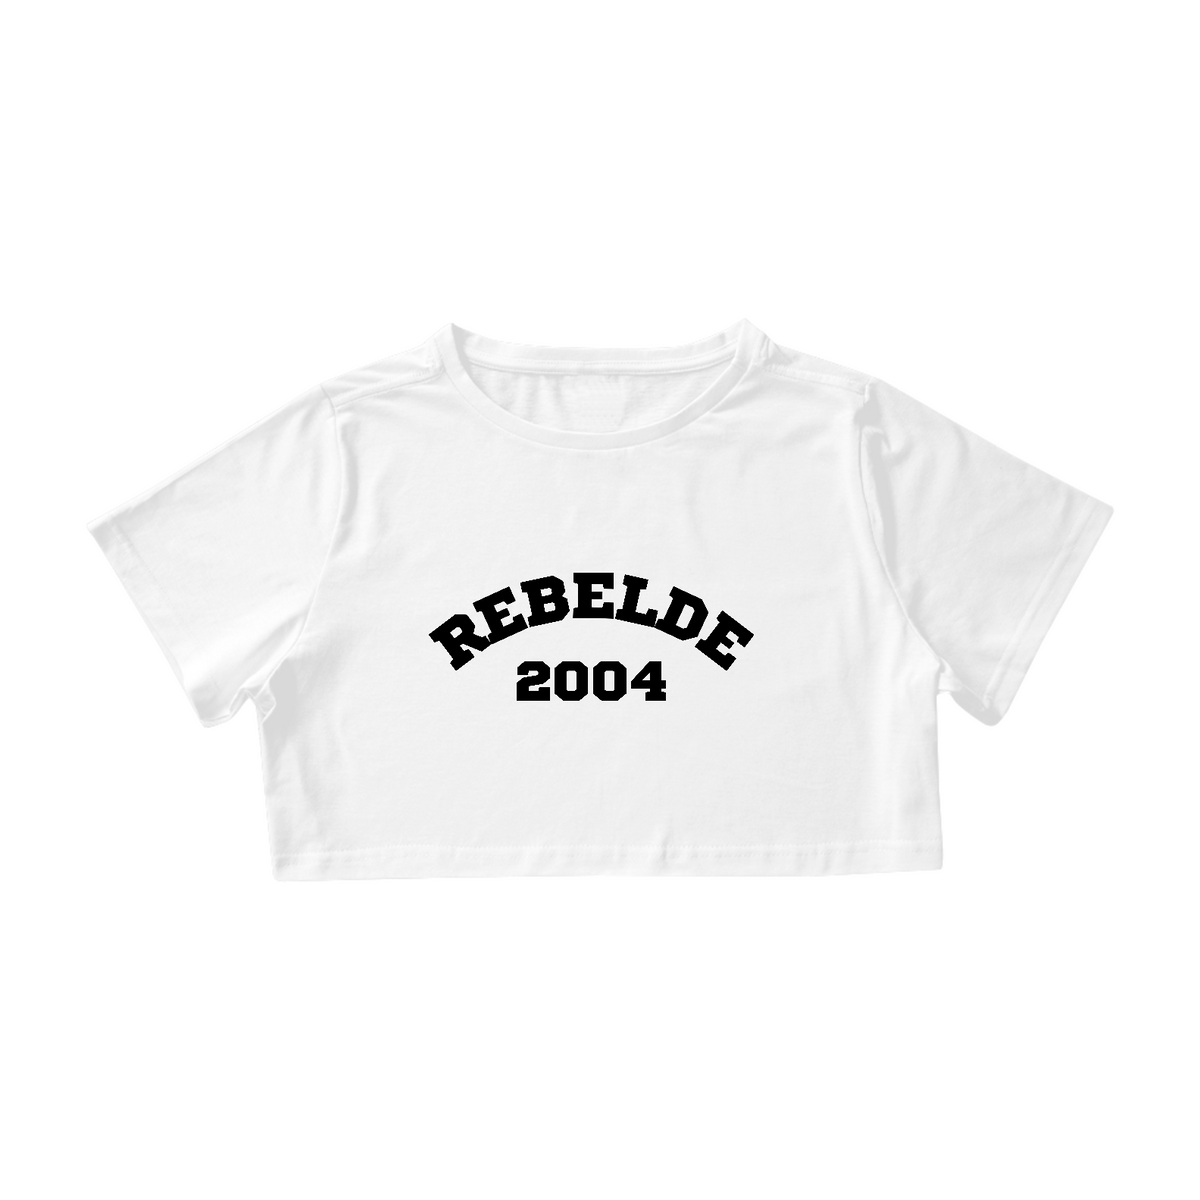 Nome do produto: Cropped - Rebelde 2004 ®